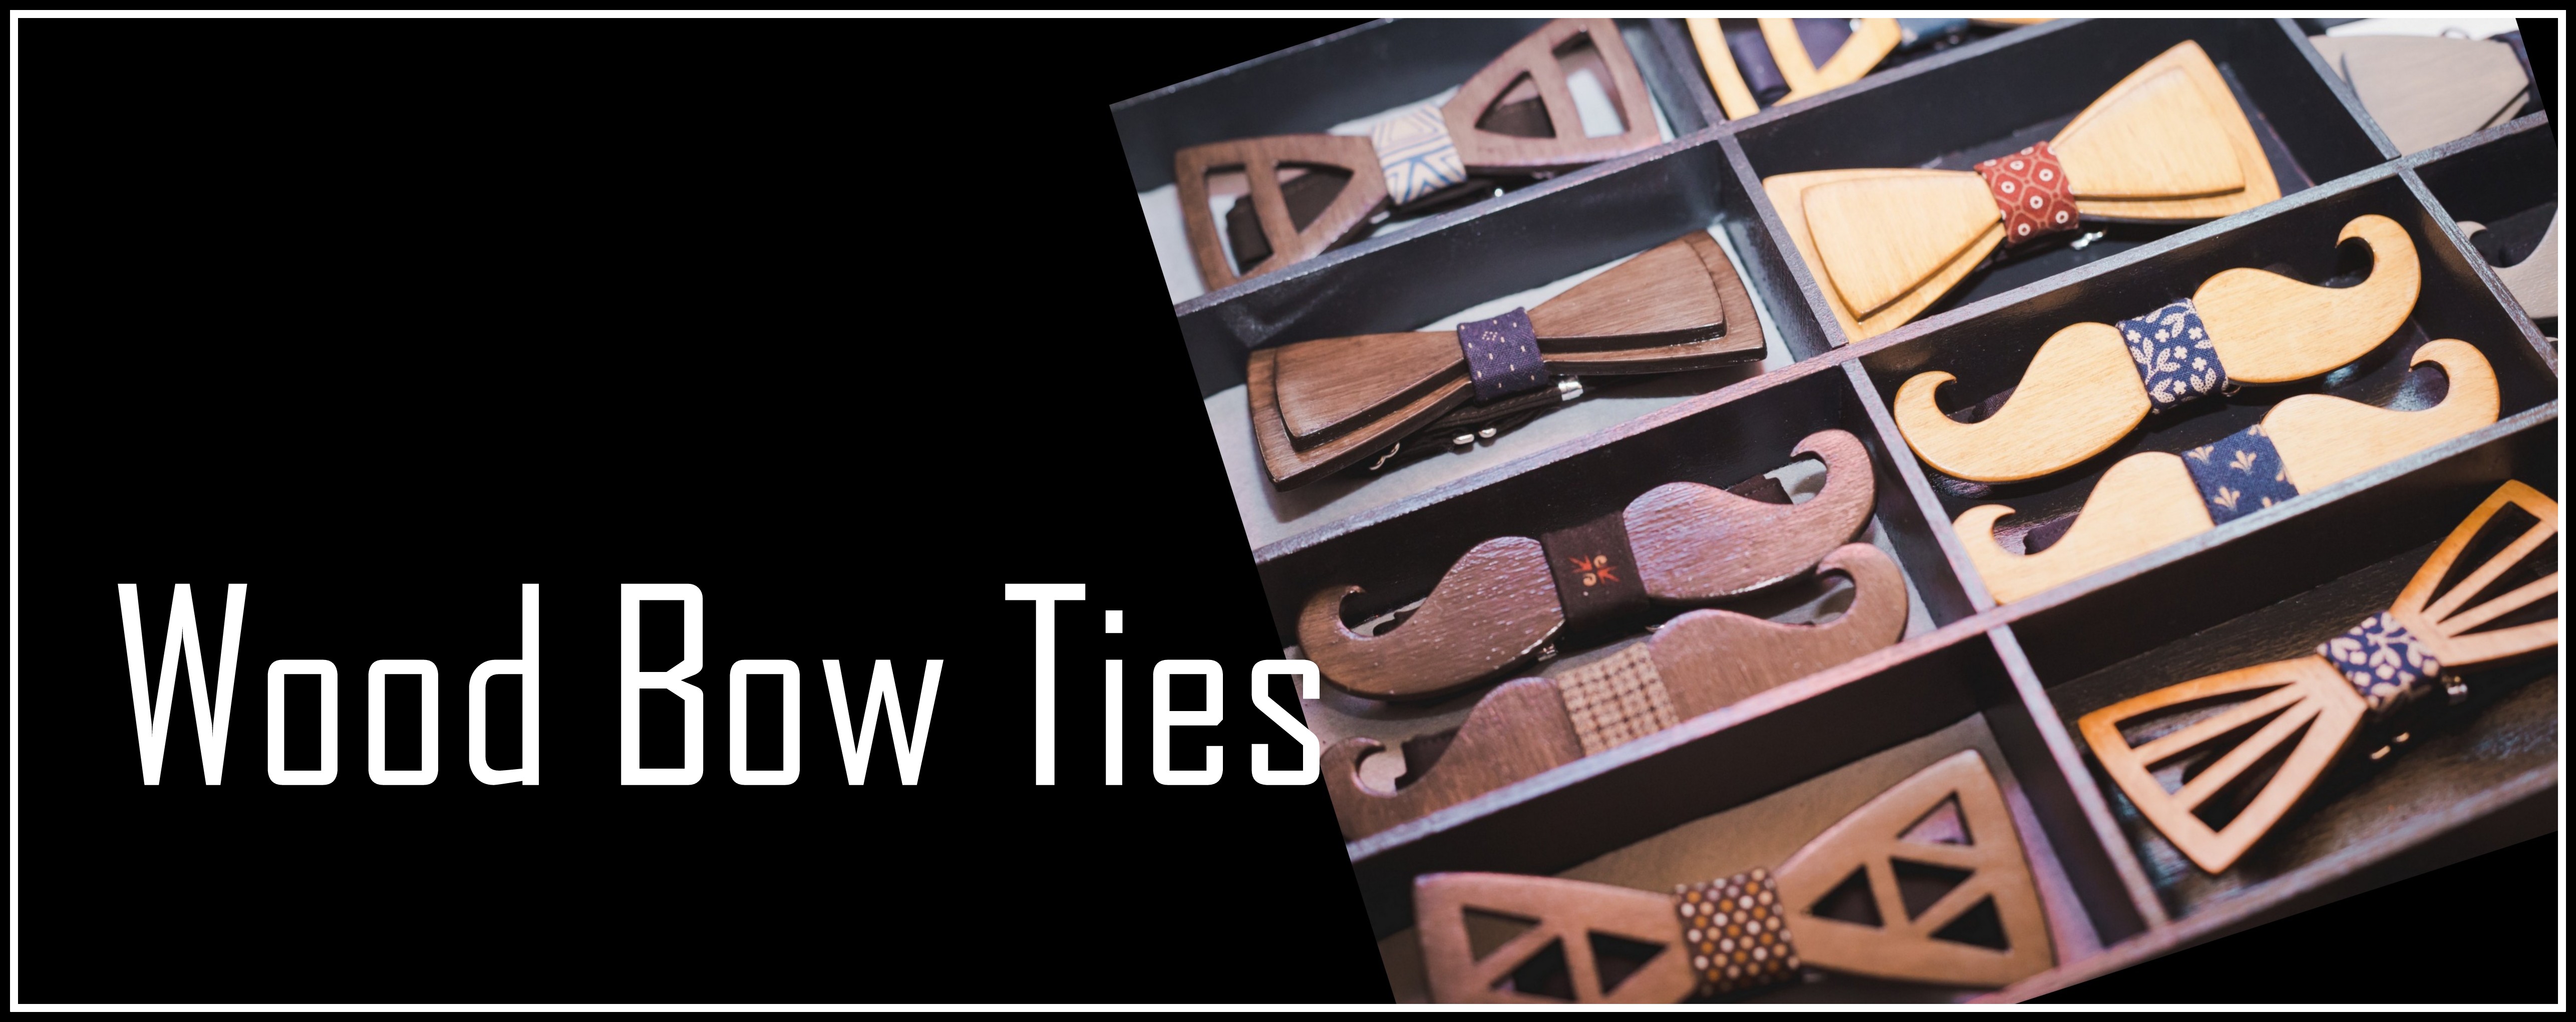 wood-bow-ties.jpg